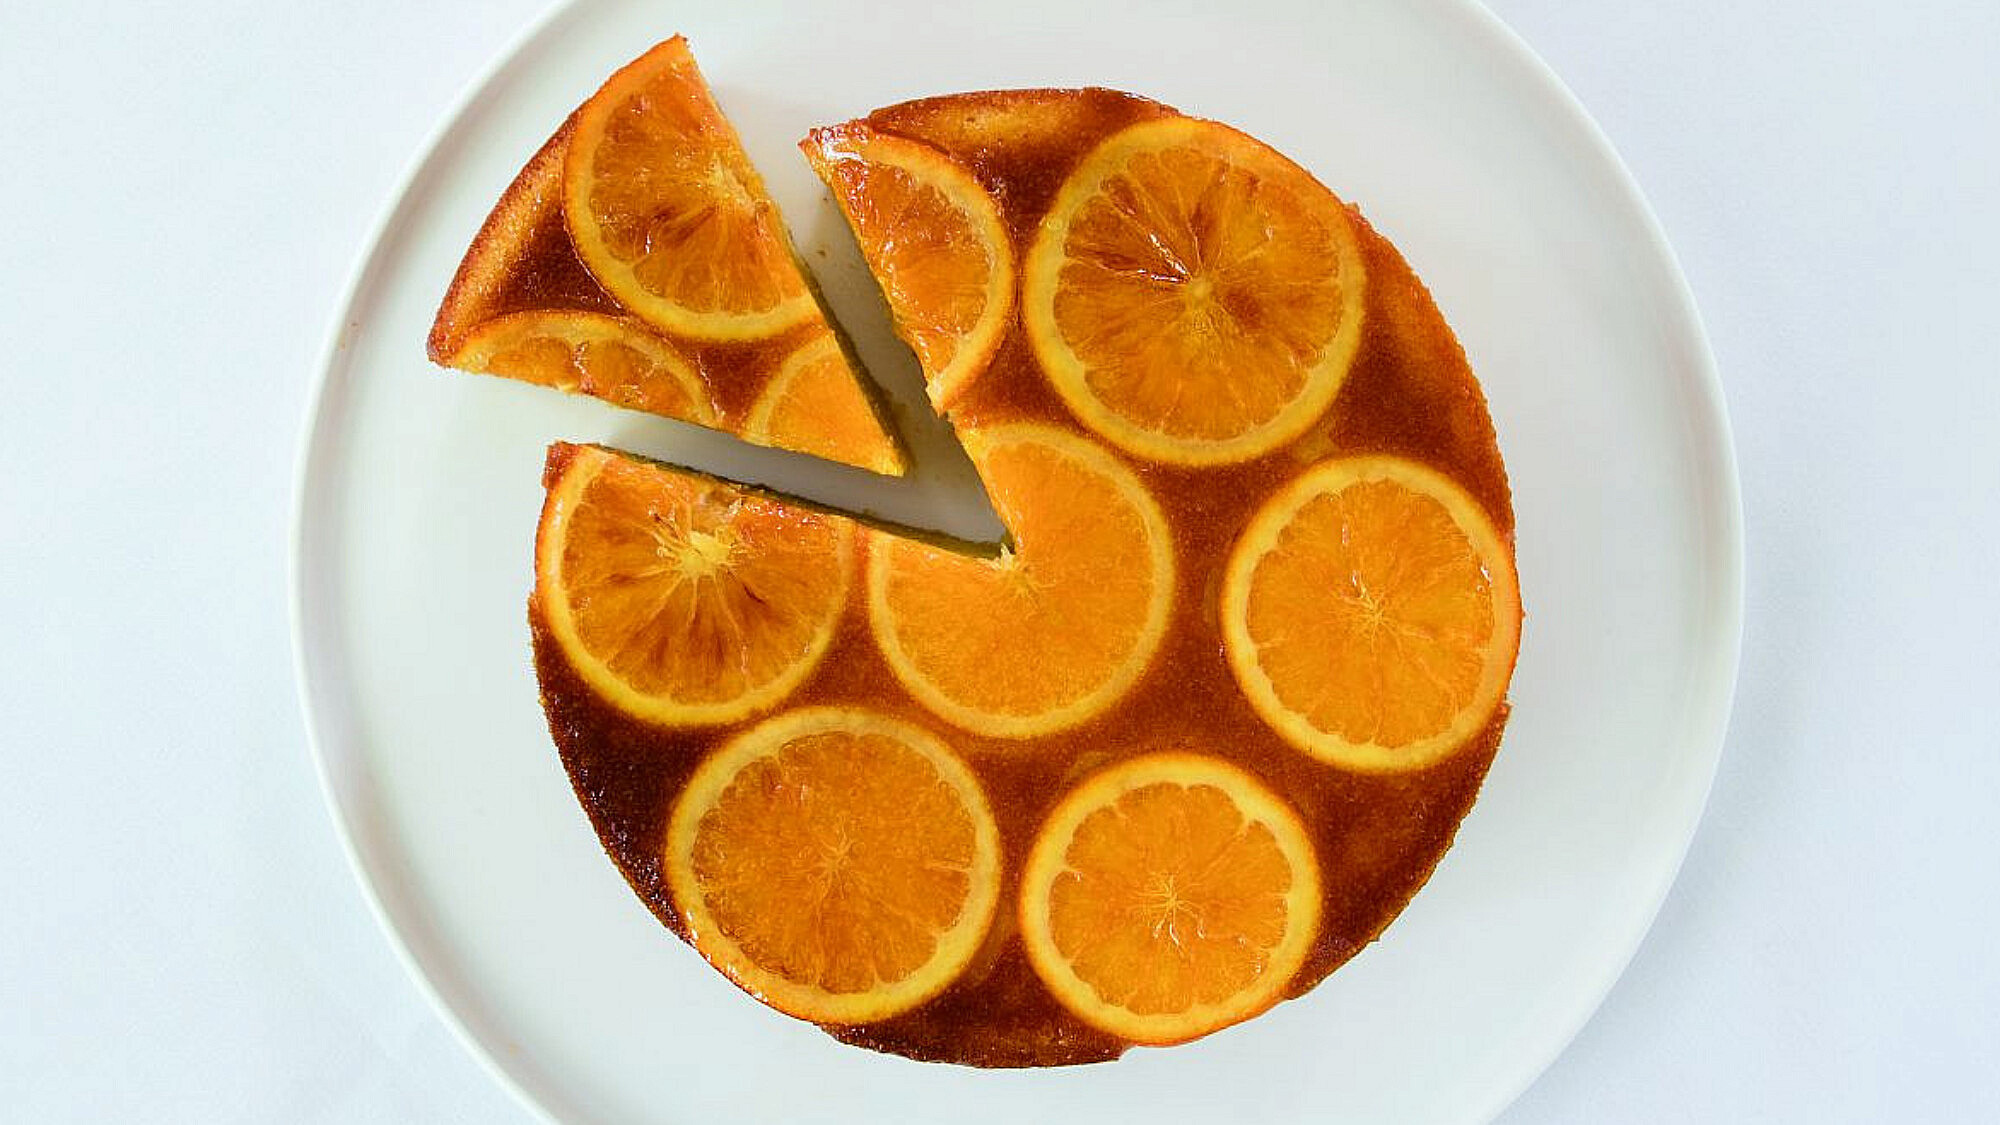 עוגת שקדים ותפוזים של רביבה אפל ז"ל | צילום: רוני כנעני